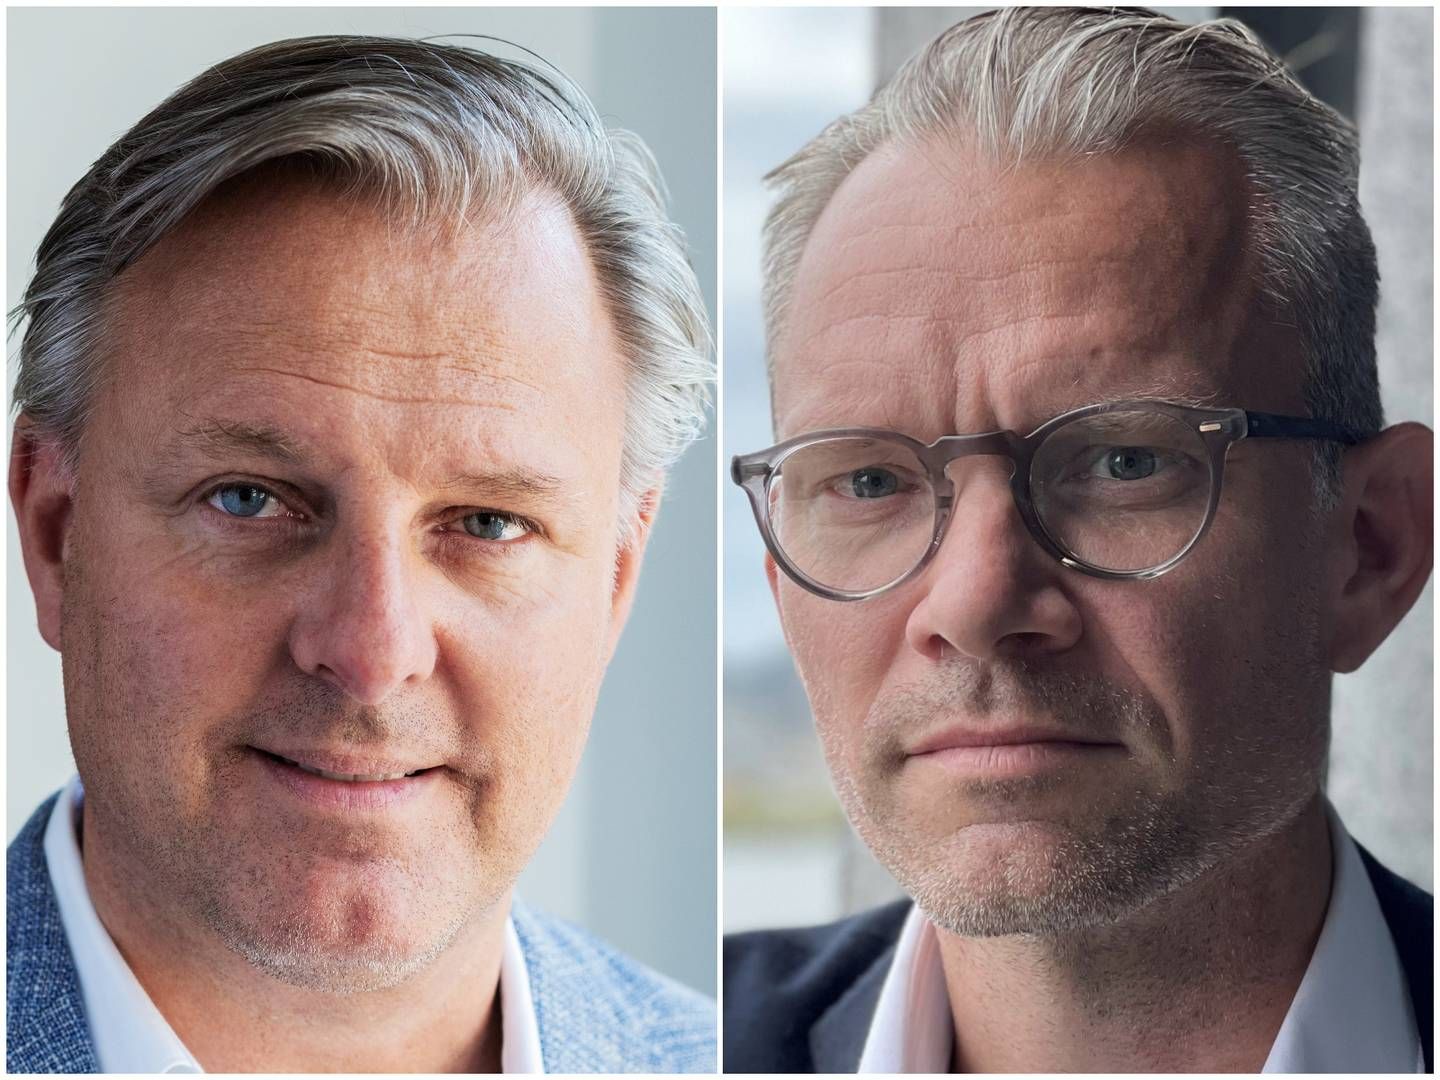 Eifo ville gøre klogt i at gentænke sin praksis, mener Troels Kryger Aggerholm (til højre) og Kim Mikkelsen. | Foto: Strategic Investments/Claus Skovholm